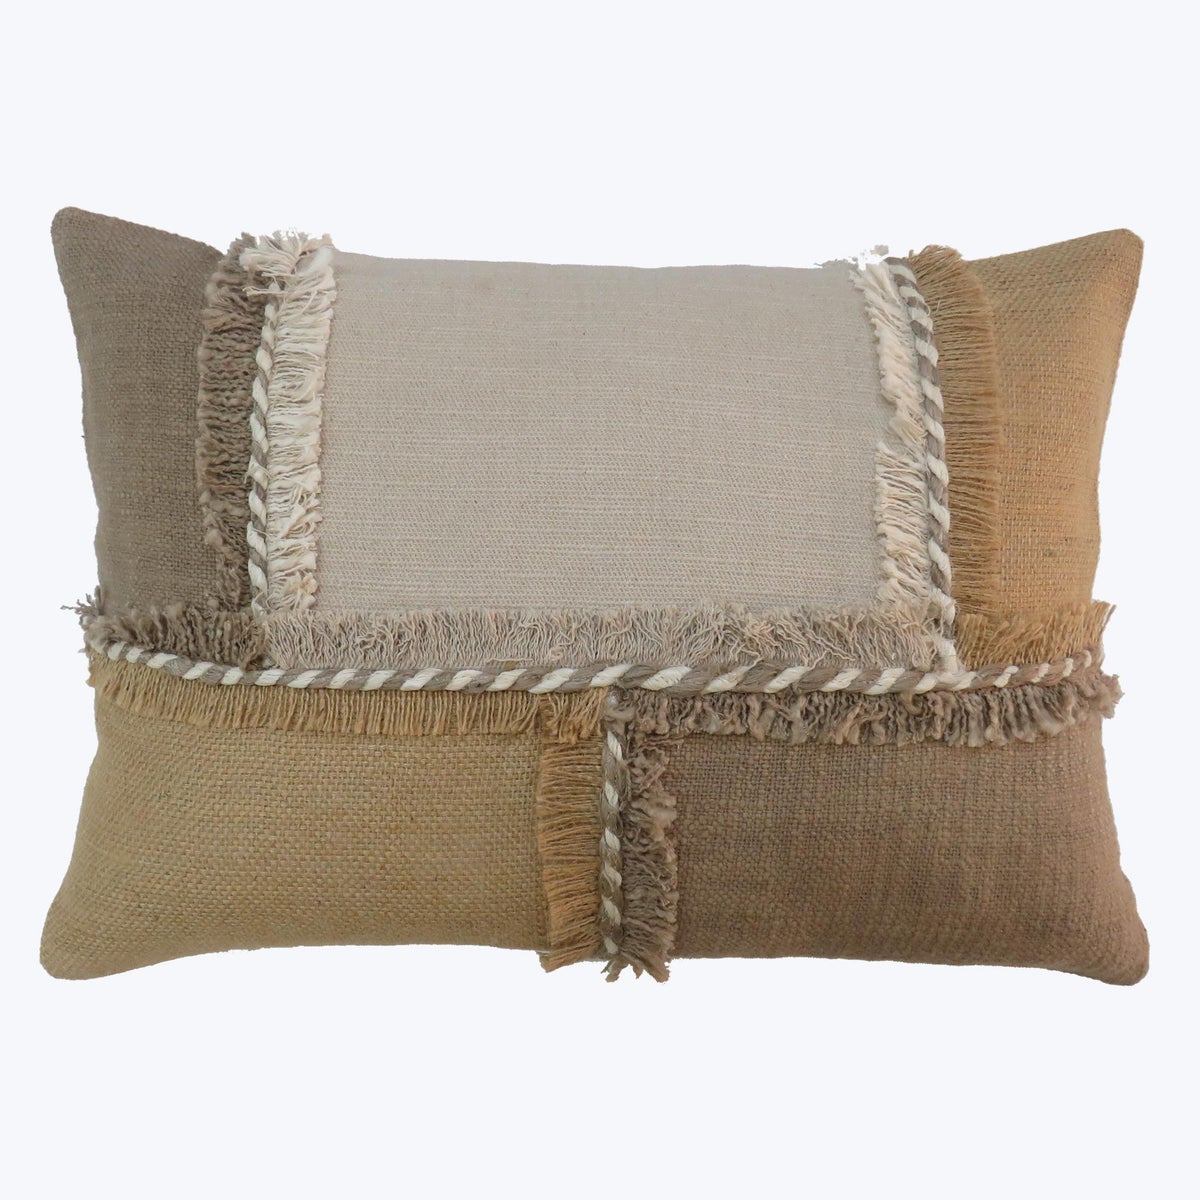 Cotton Patched Lumbar Pillow